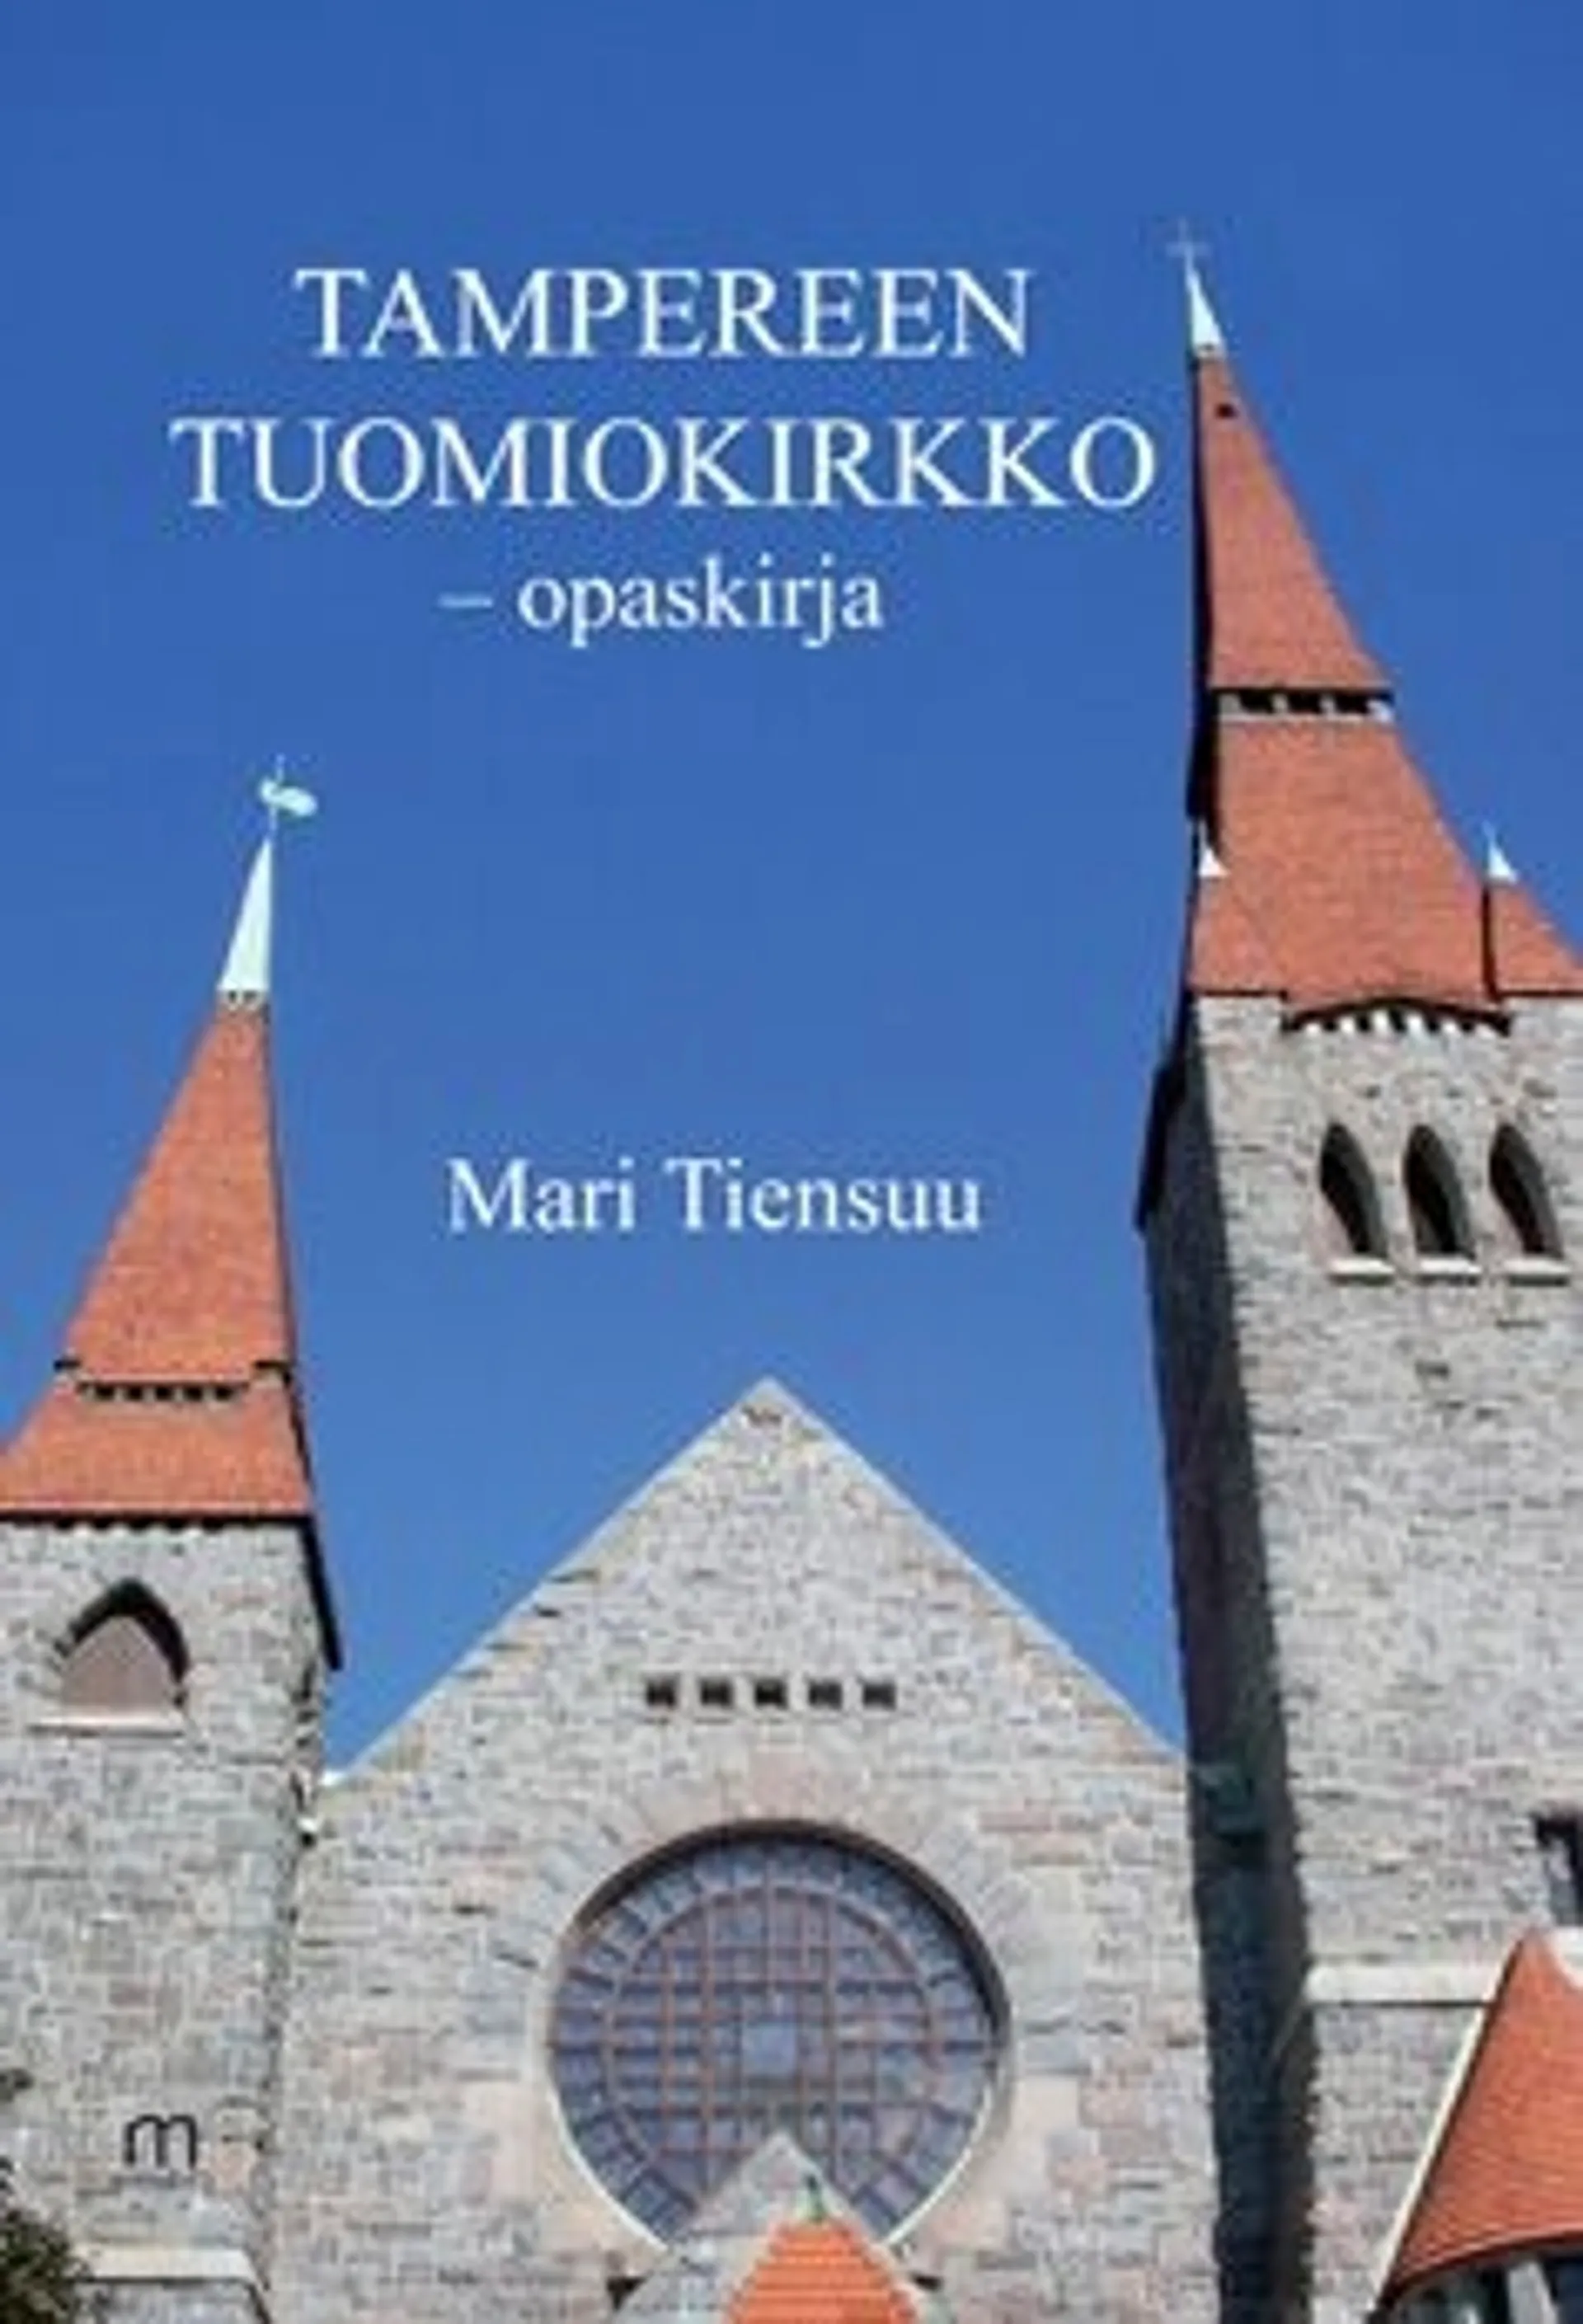 Tiensuu, Tampereen tuomiokirkko -opaskirja